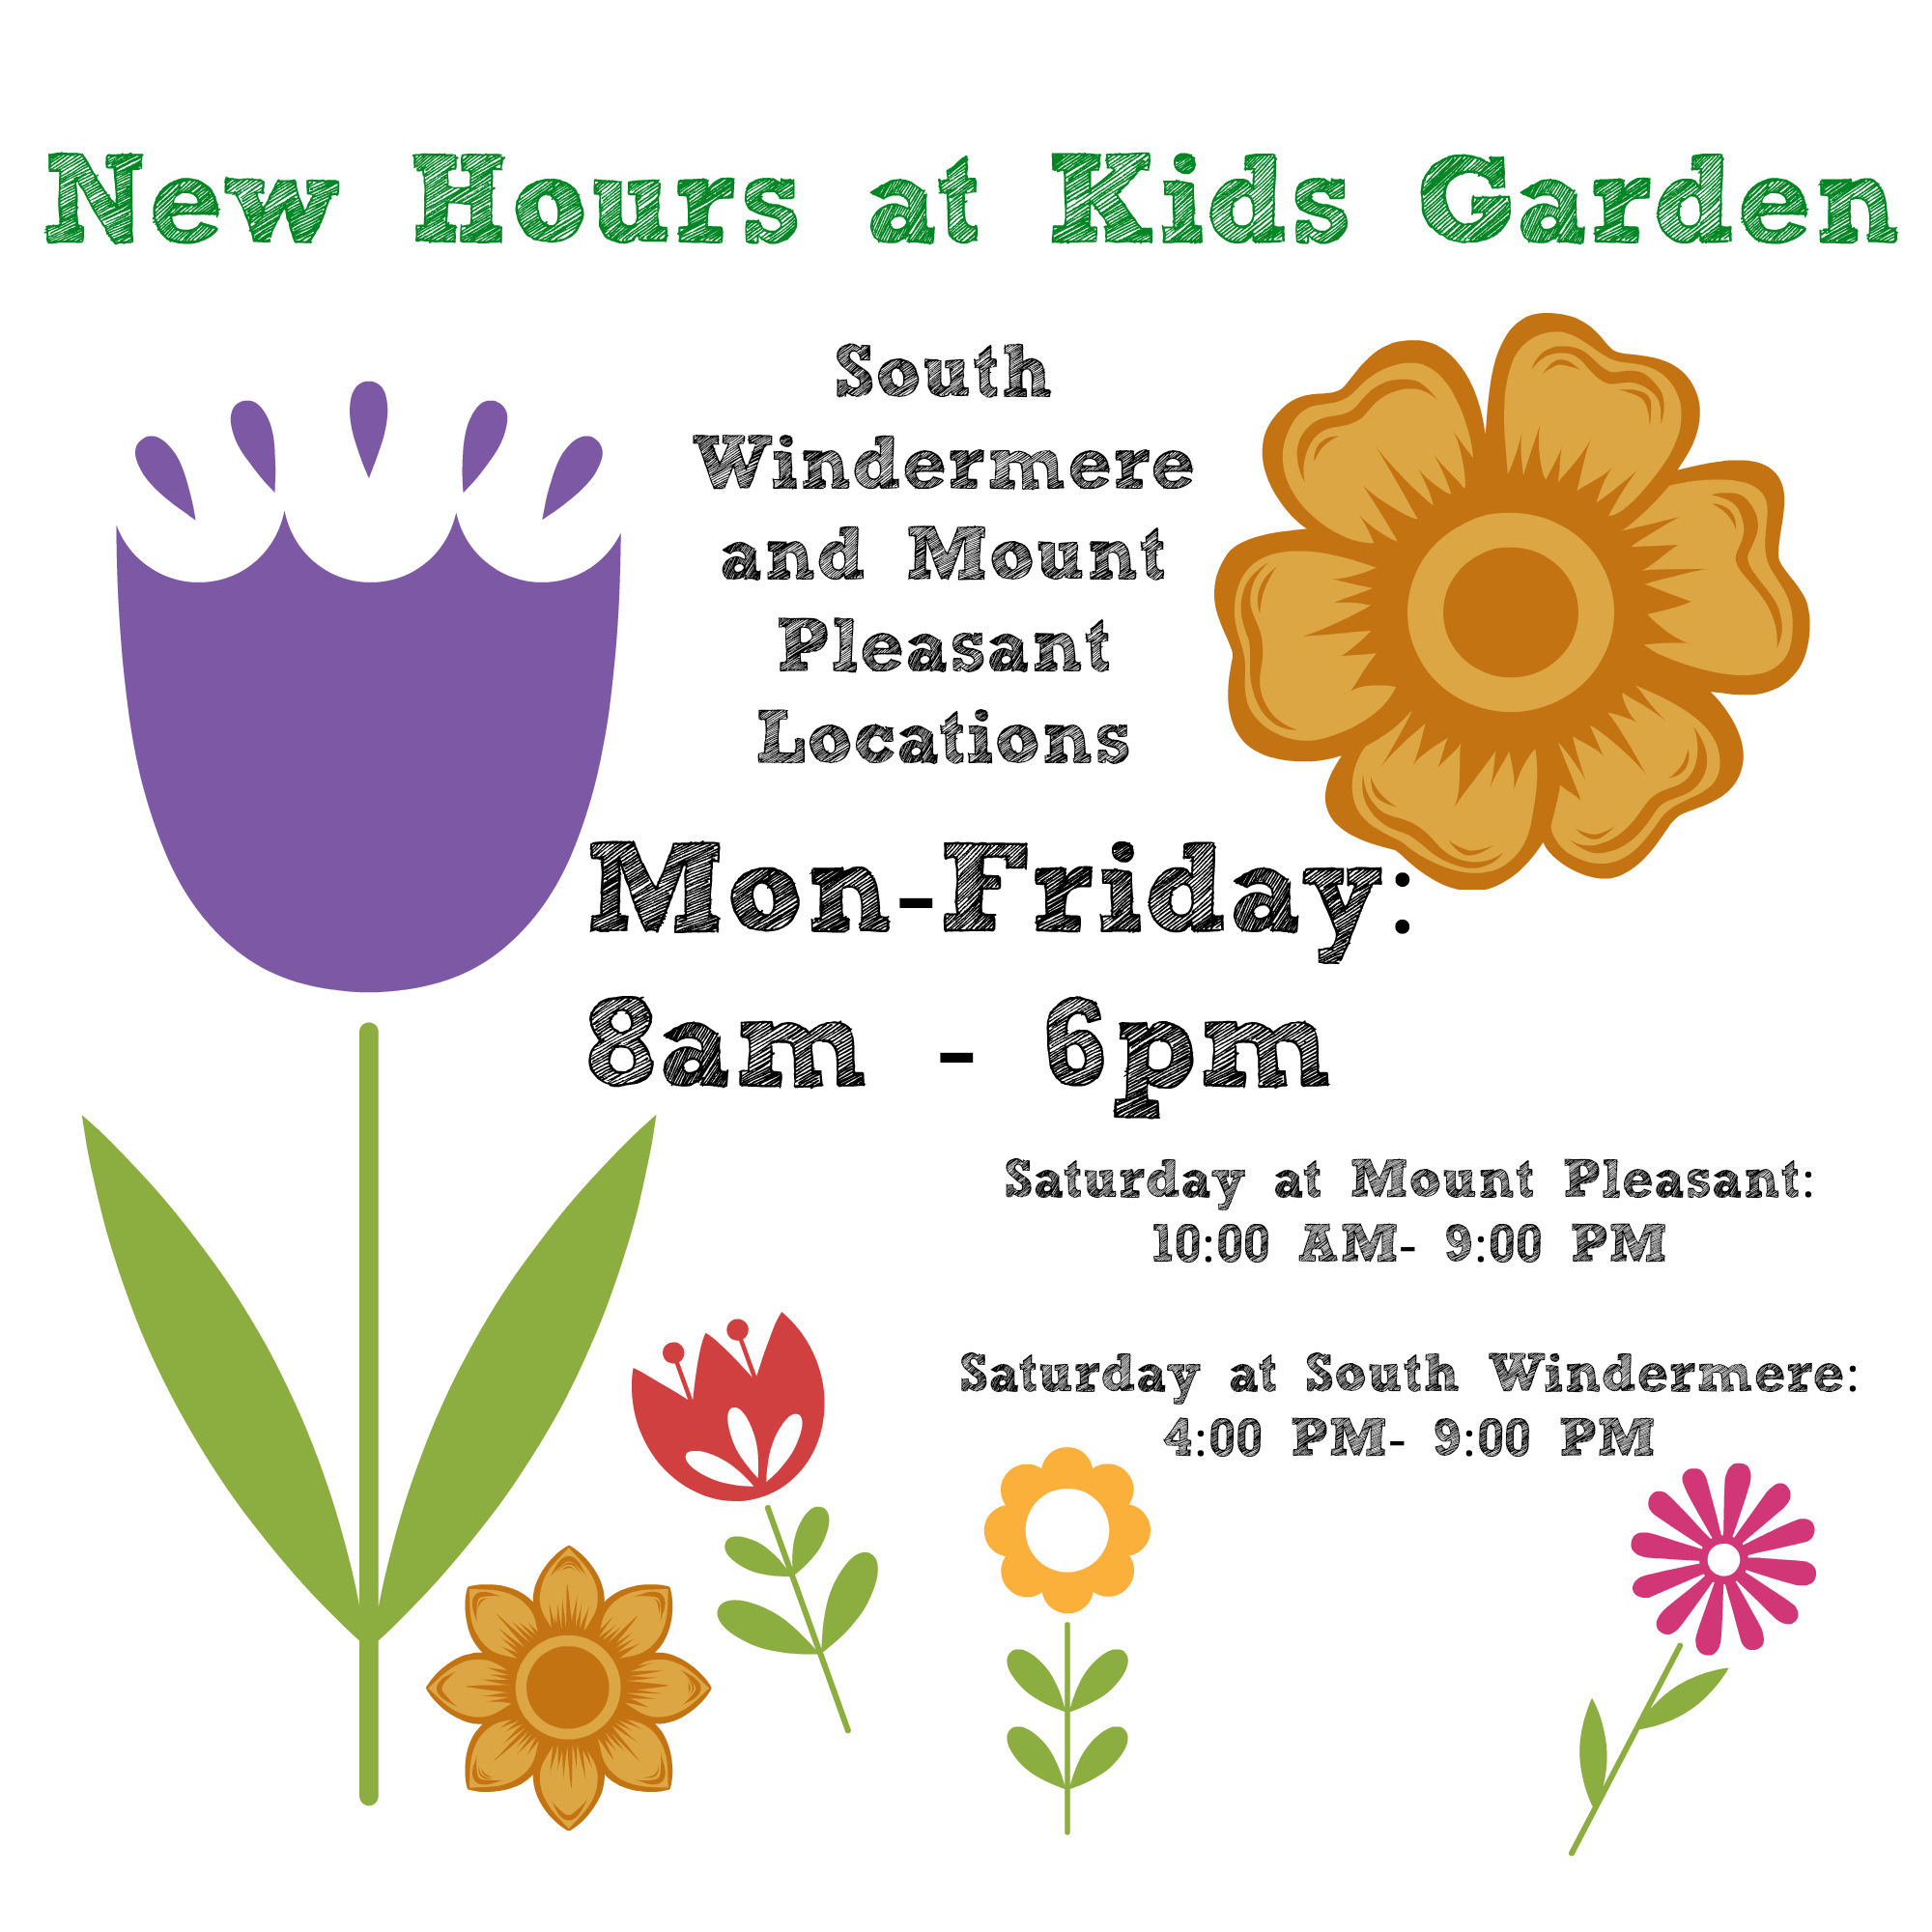 The new schedule at Kids Garden.